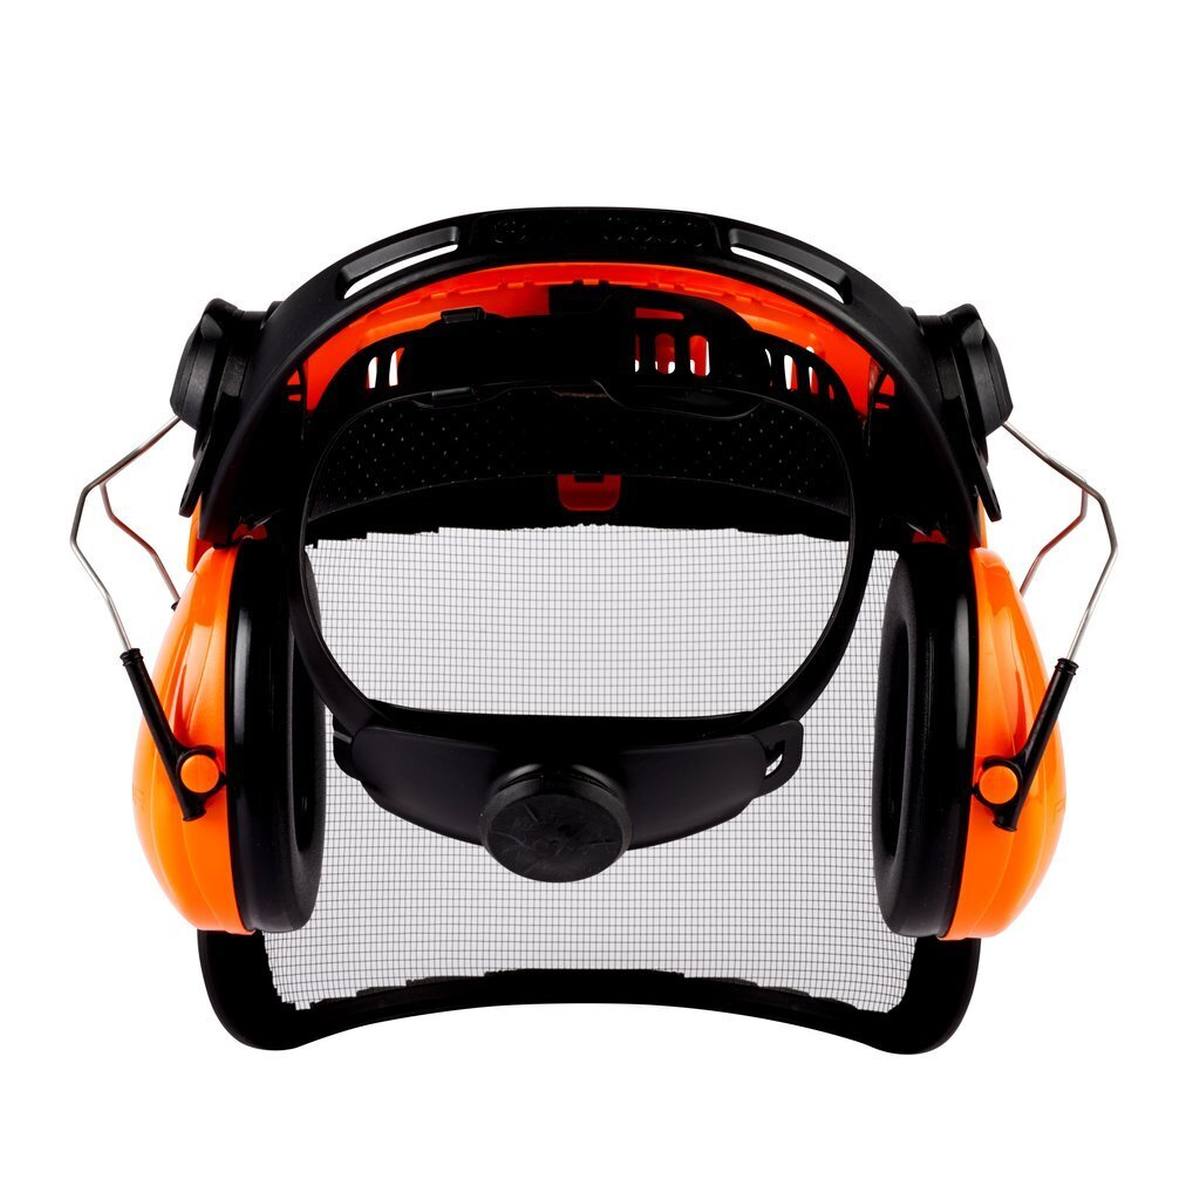 3M G500 combinazione di protezione per la testa G500V5CH510-OR supporto per la testa - arancione incl. cuffie H510P3E, SNR=26 dB con visiera 5C-1 in acciaio inox